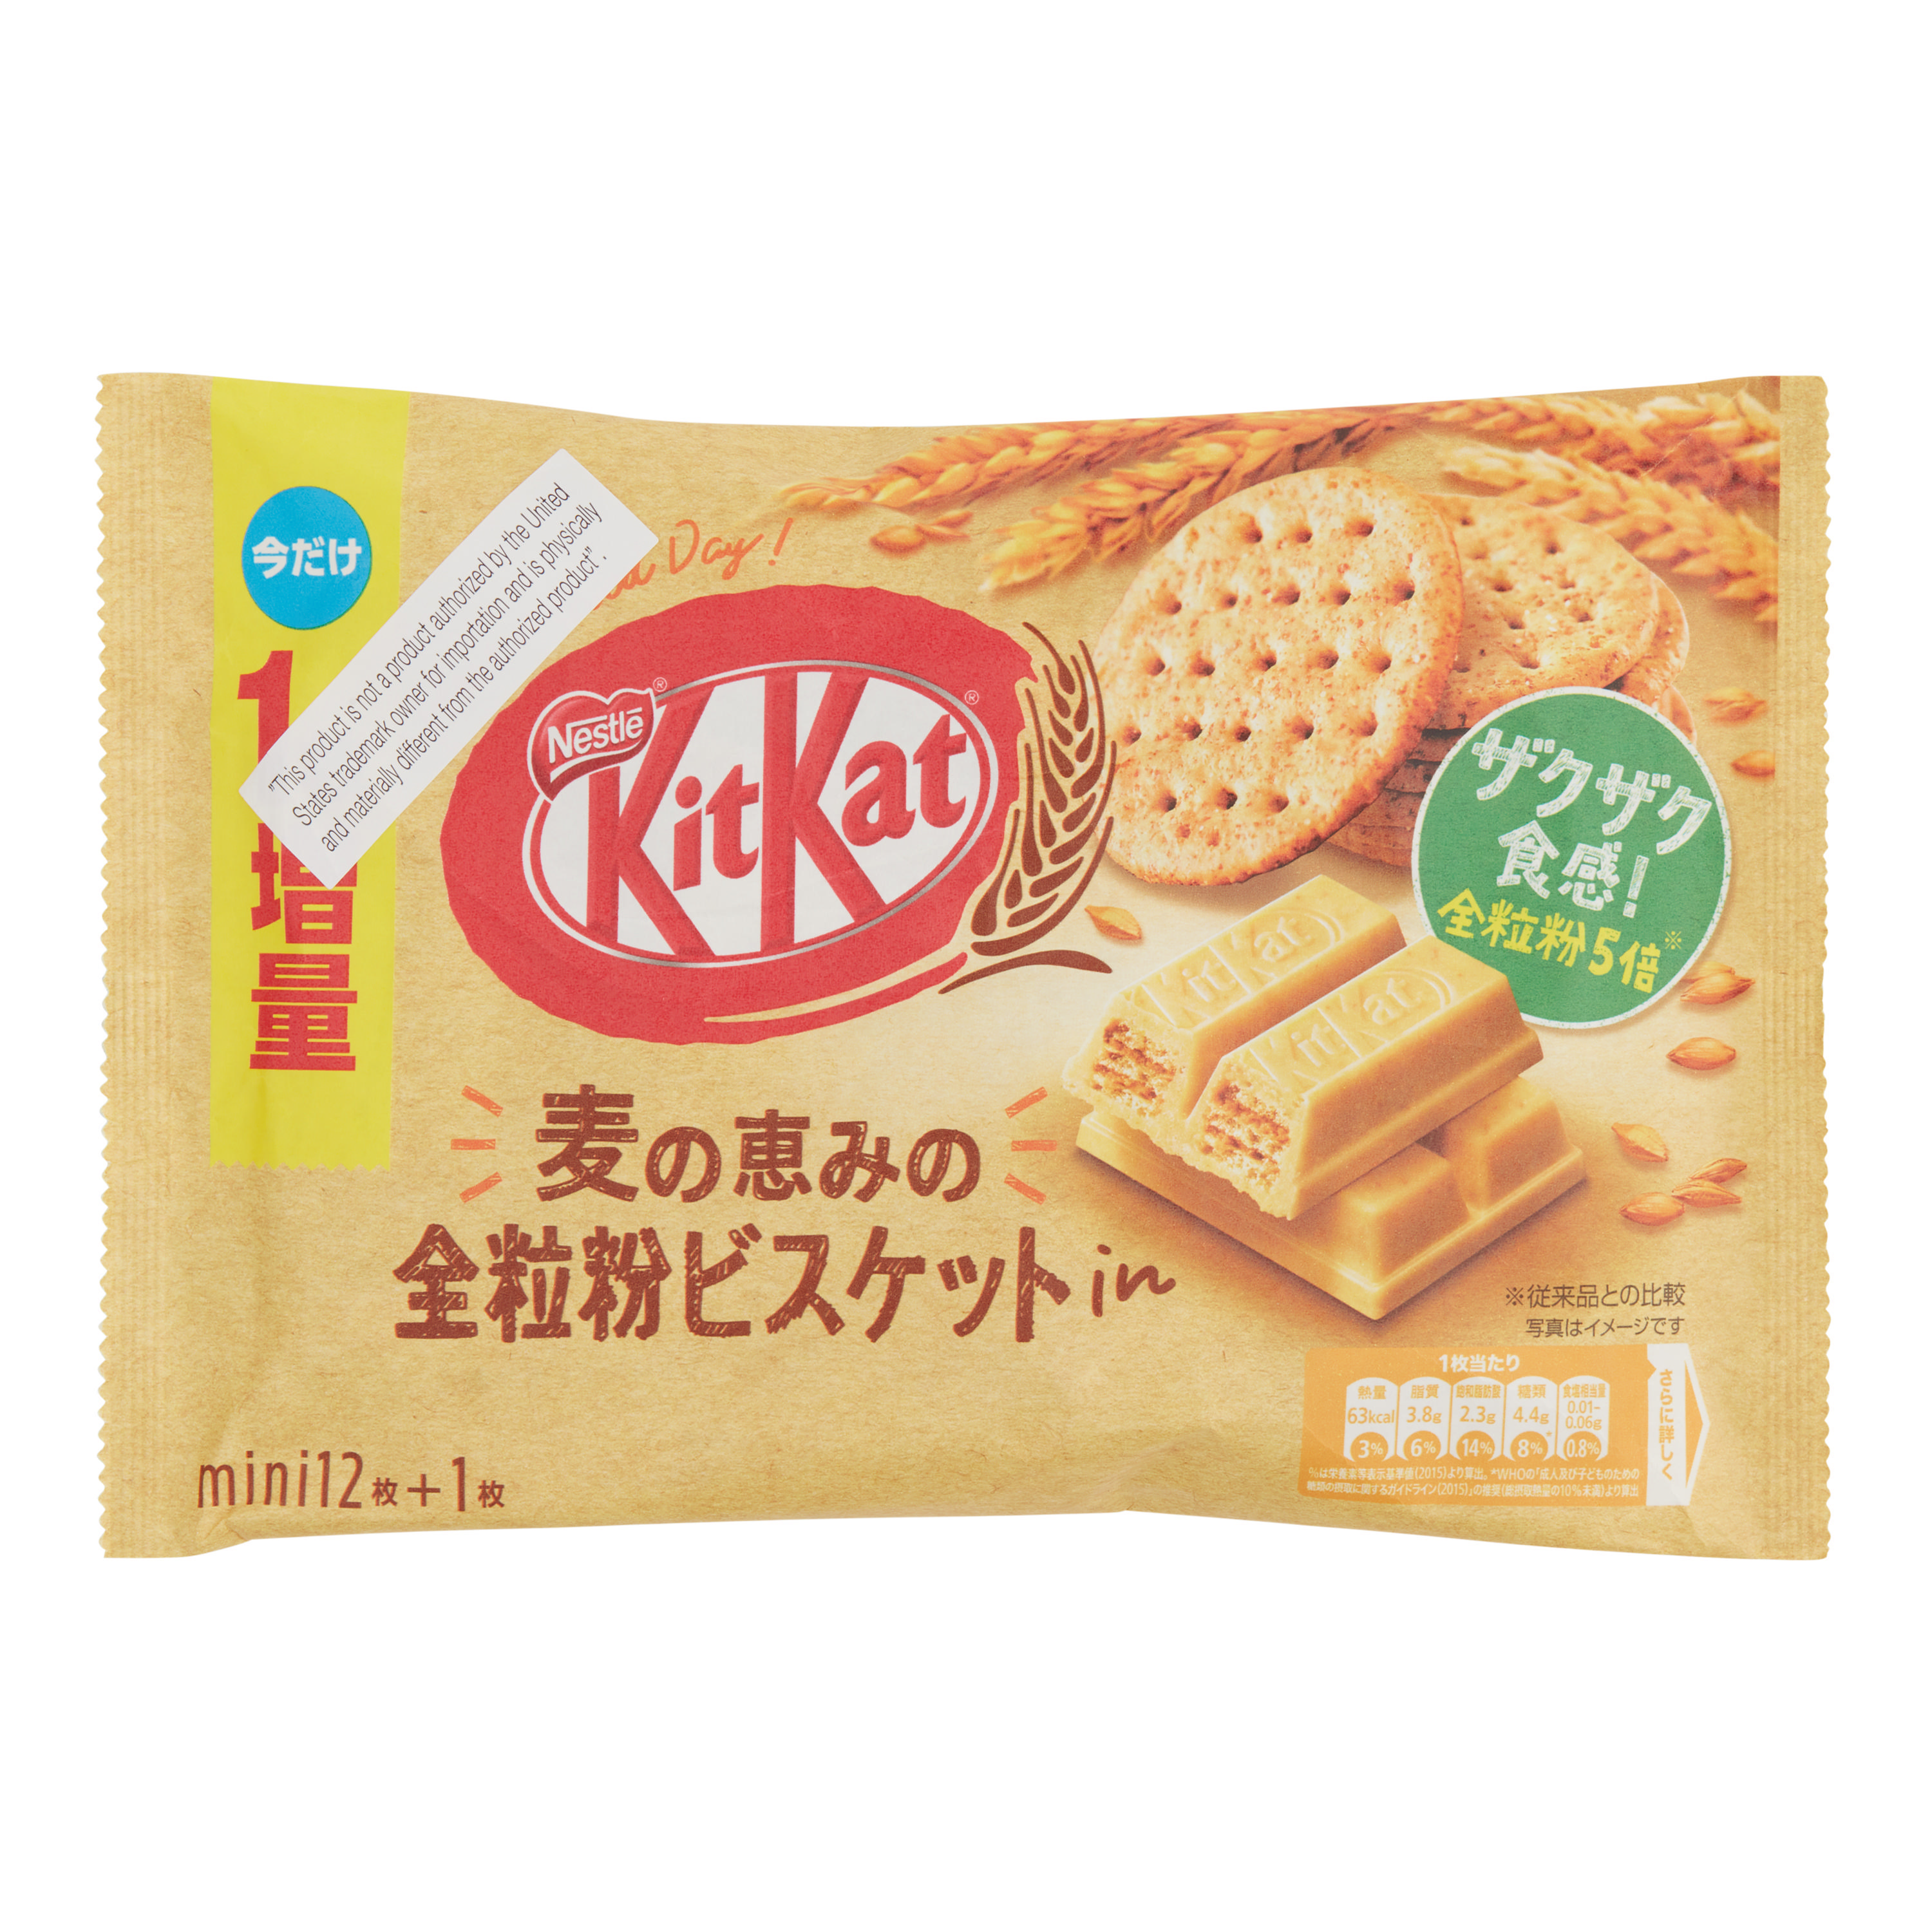 Nestle Kit Kat Biscuit Wafer Bars Bag - World Market